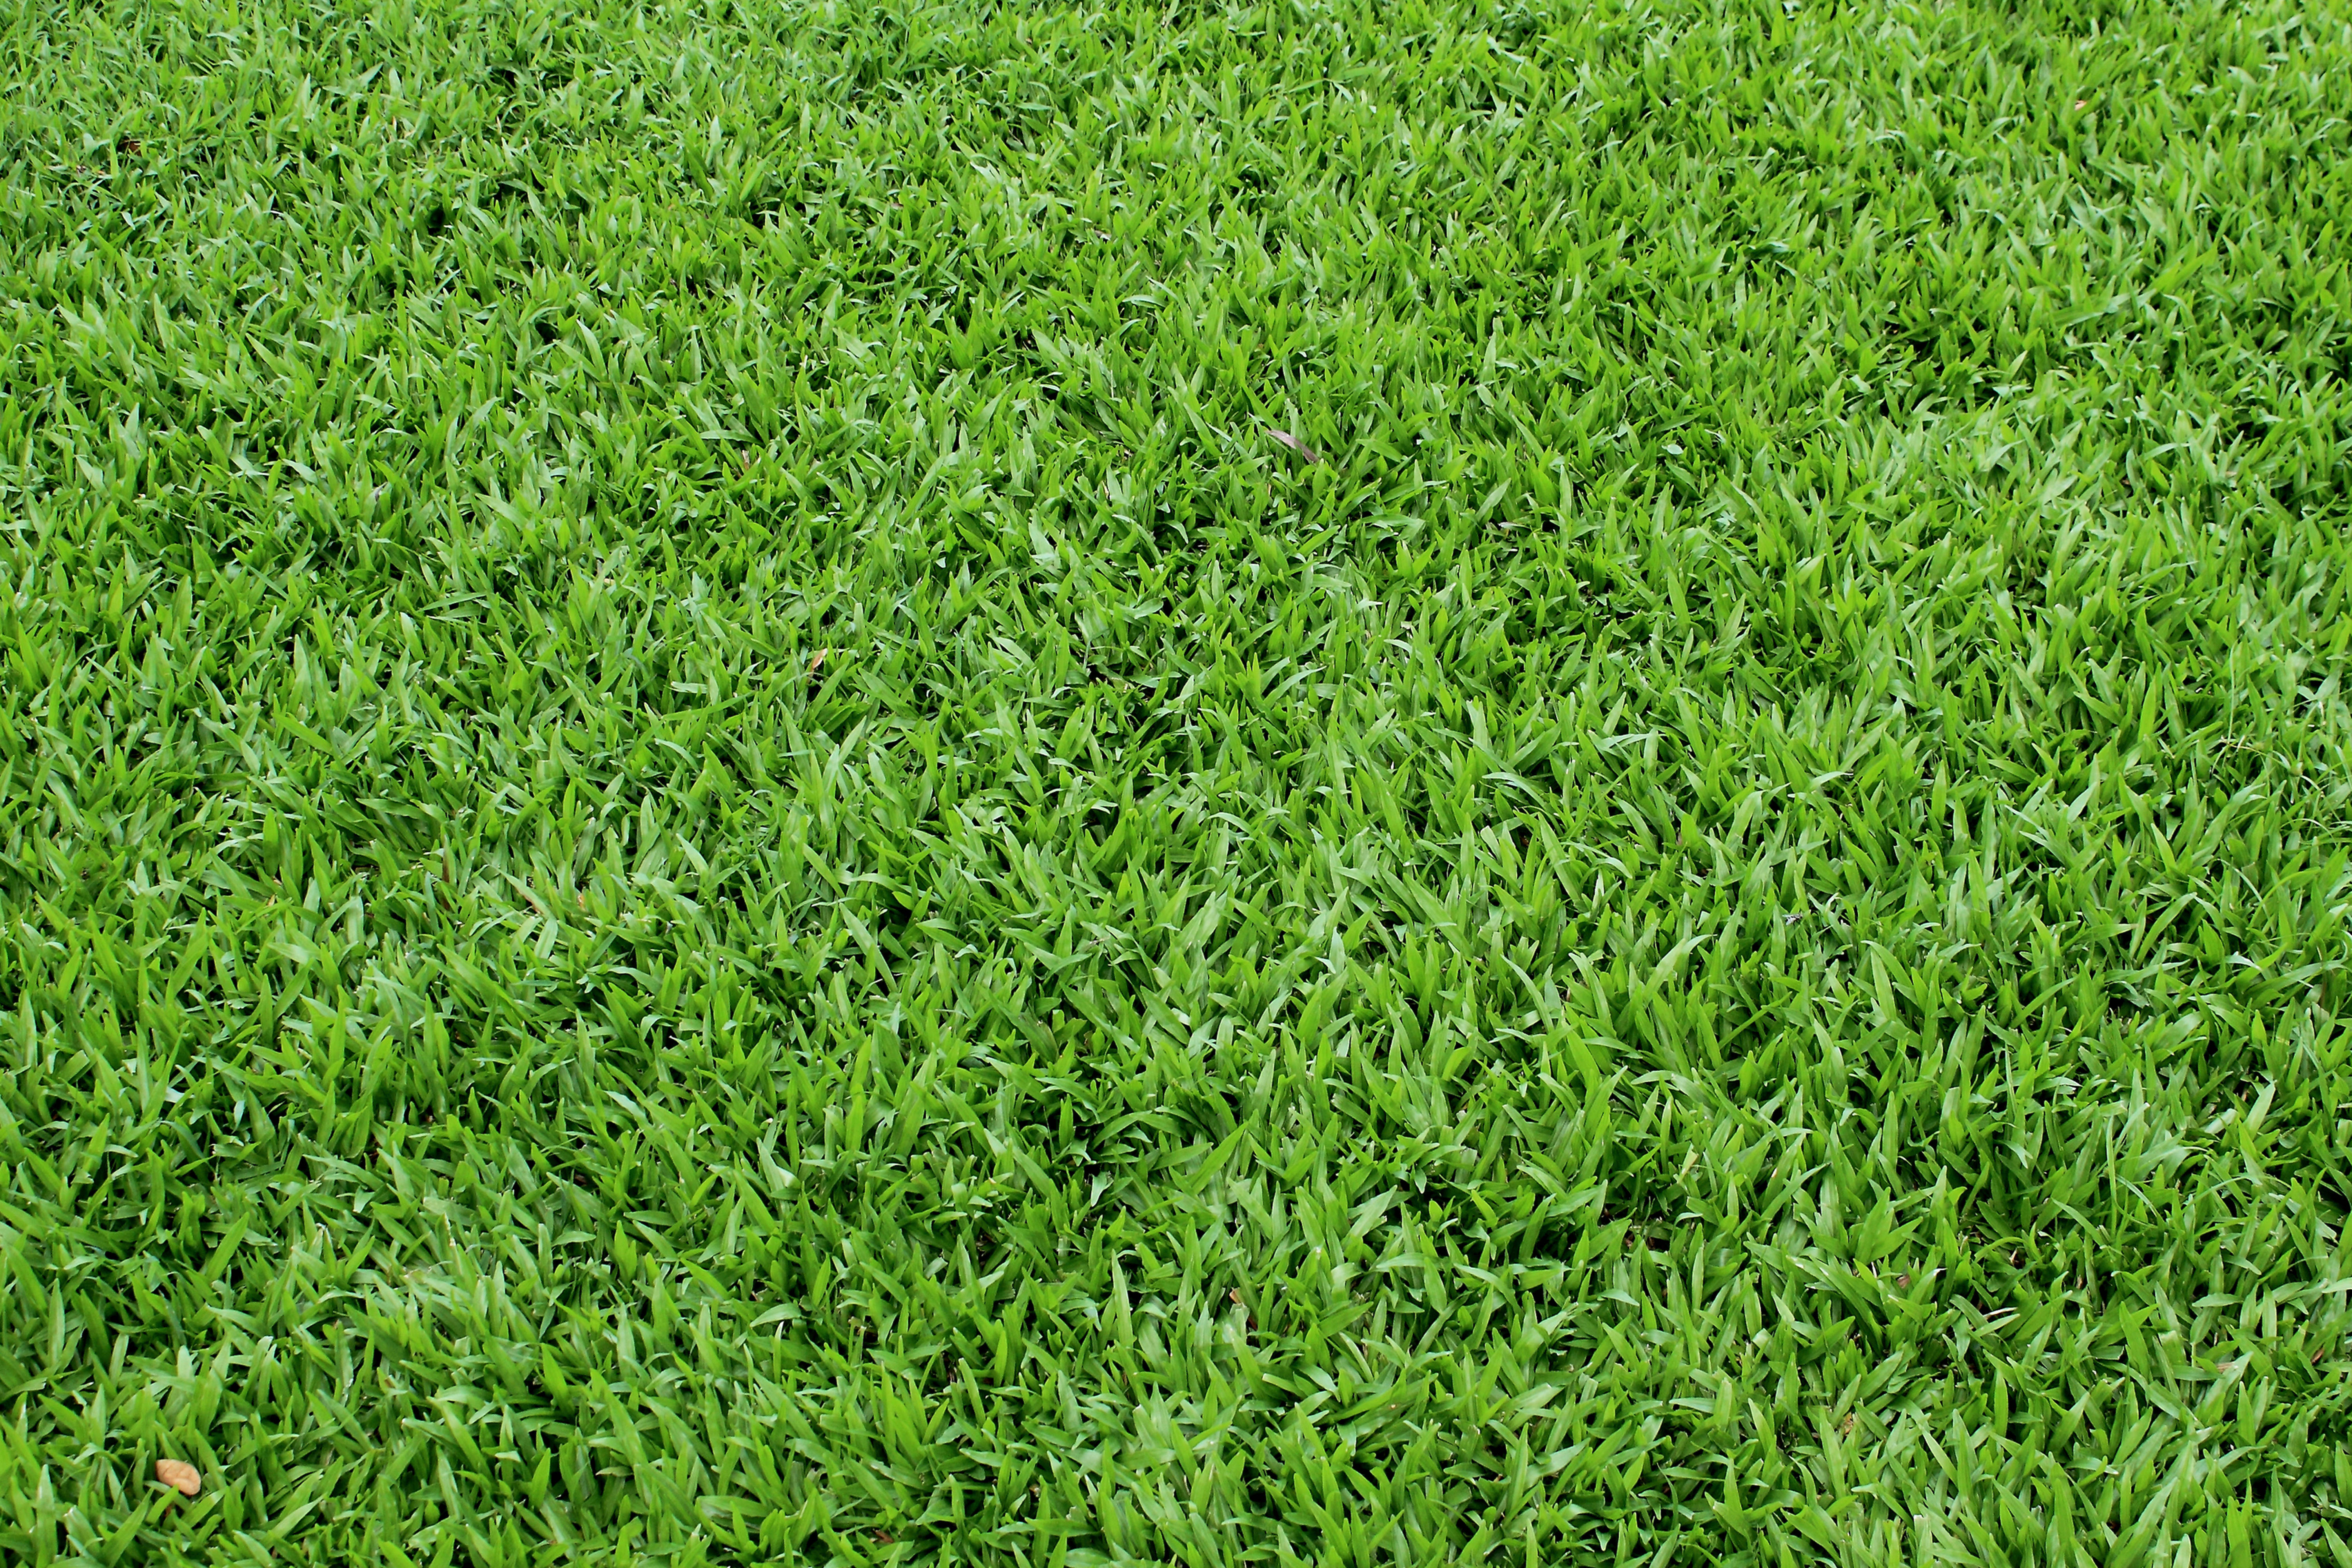 green grass texture, texture download photo, background, green grass